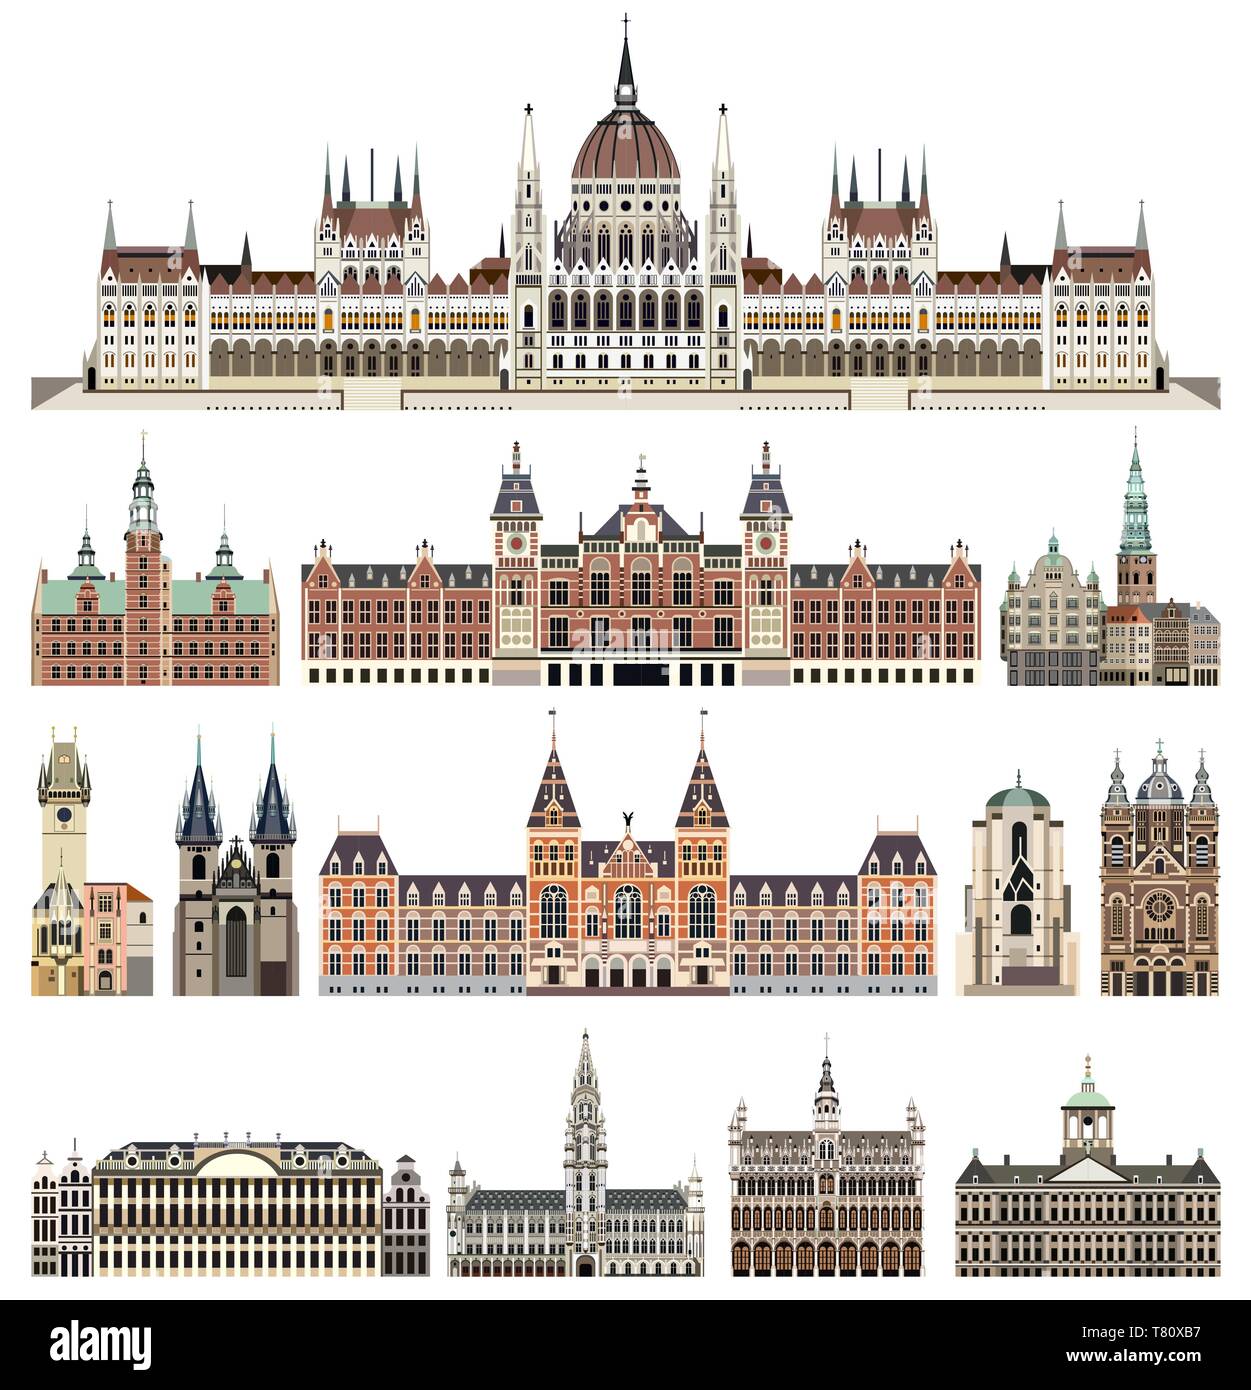 Vector set de cathédrales isolées, les palais, les maisons, les bâtiments, et d'autres villes d'éléments à l'horizon de la rue Illustration de Vecteur